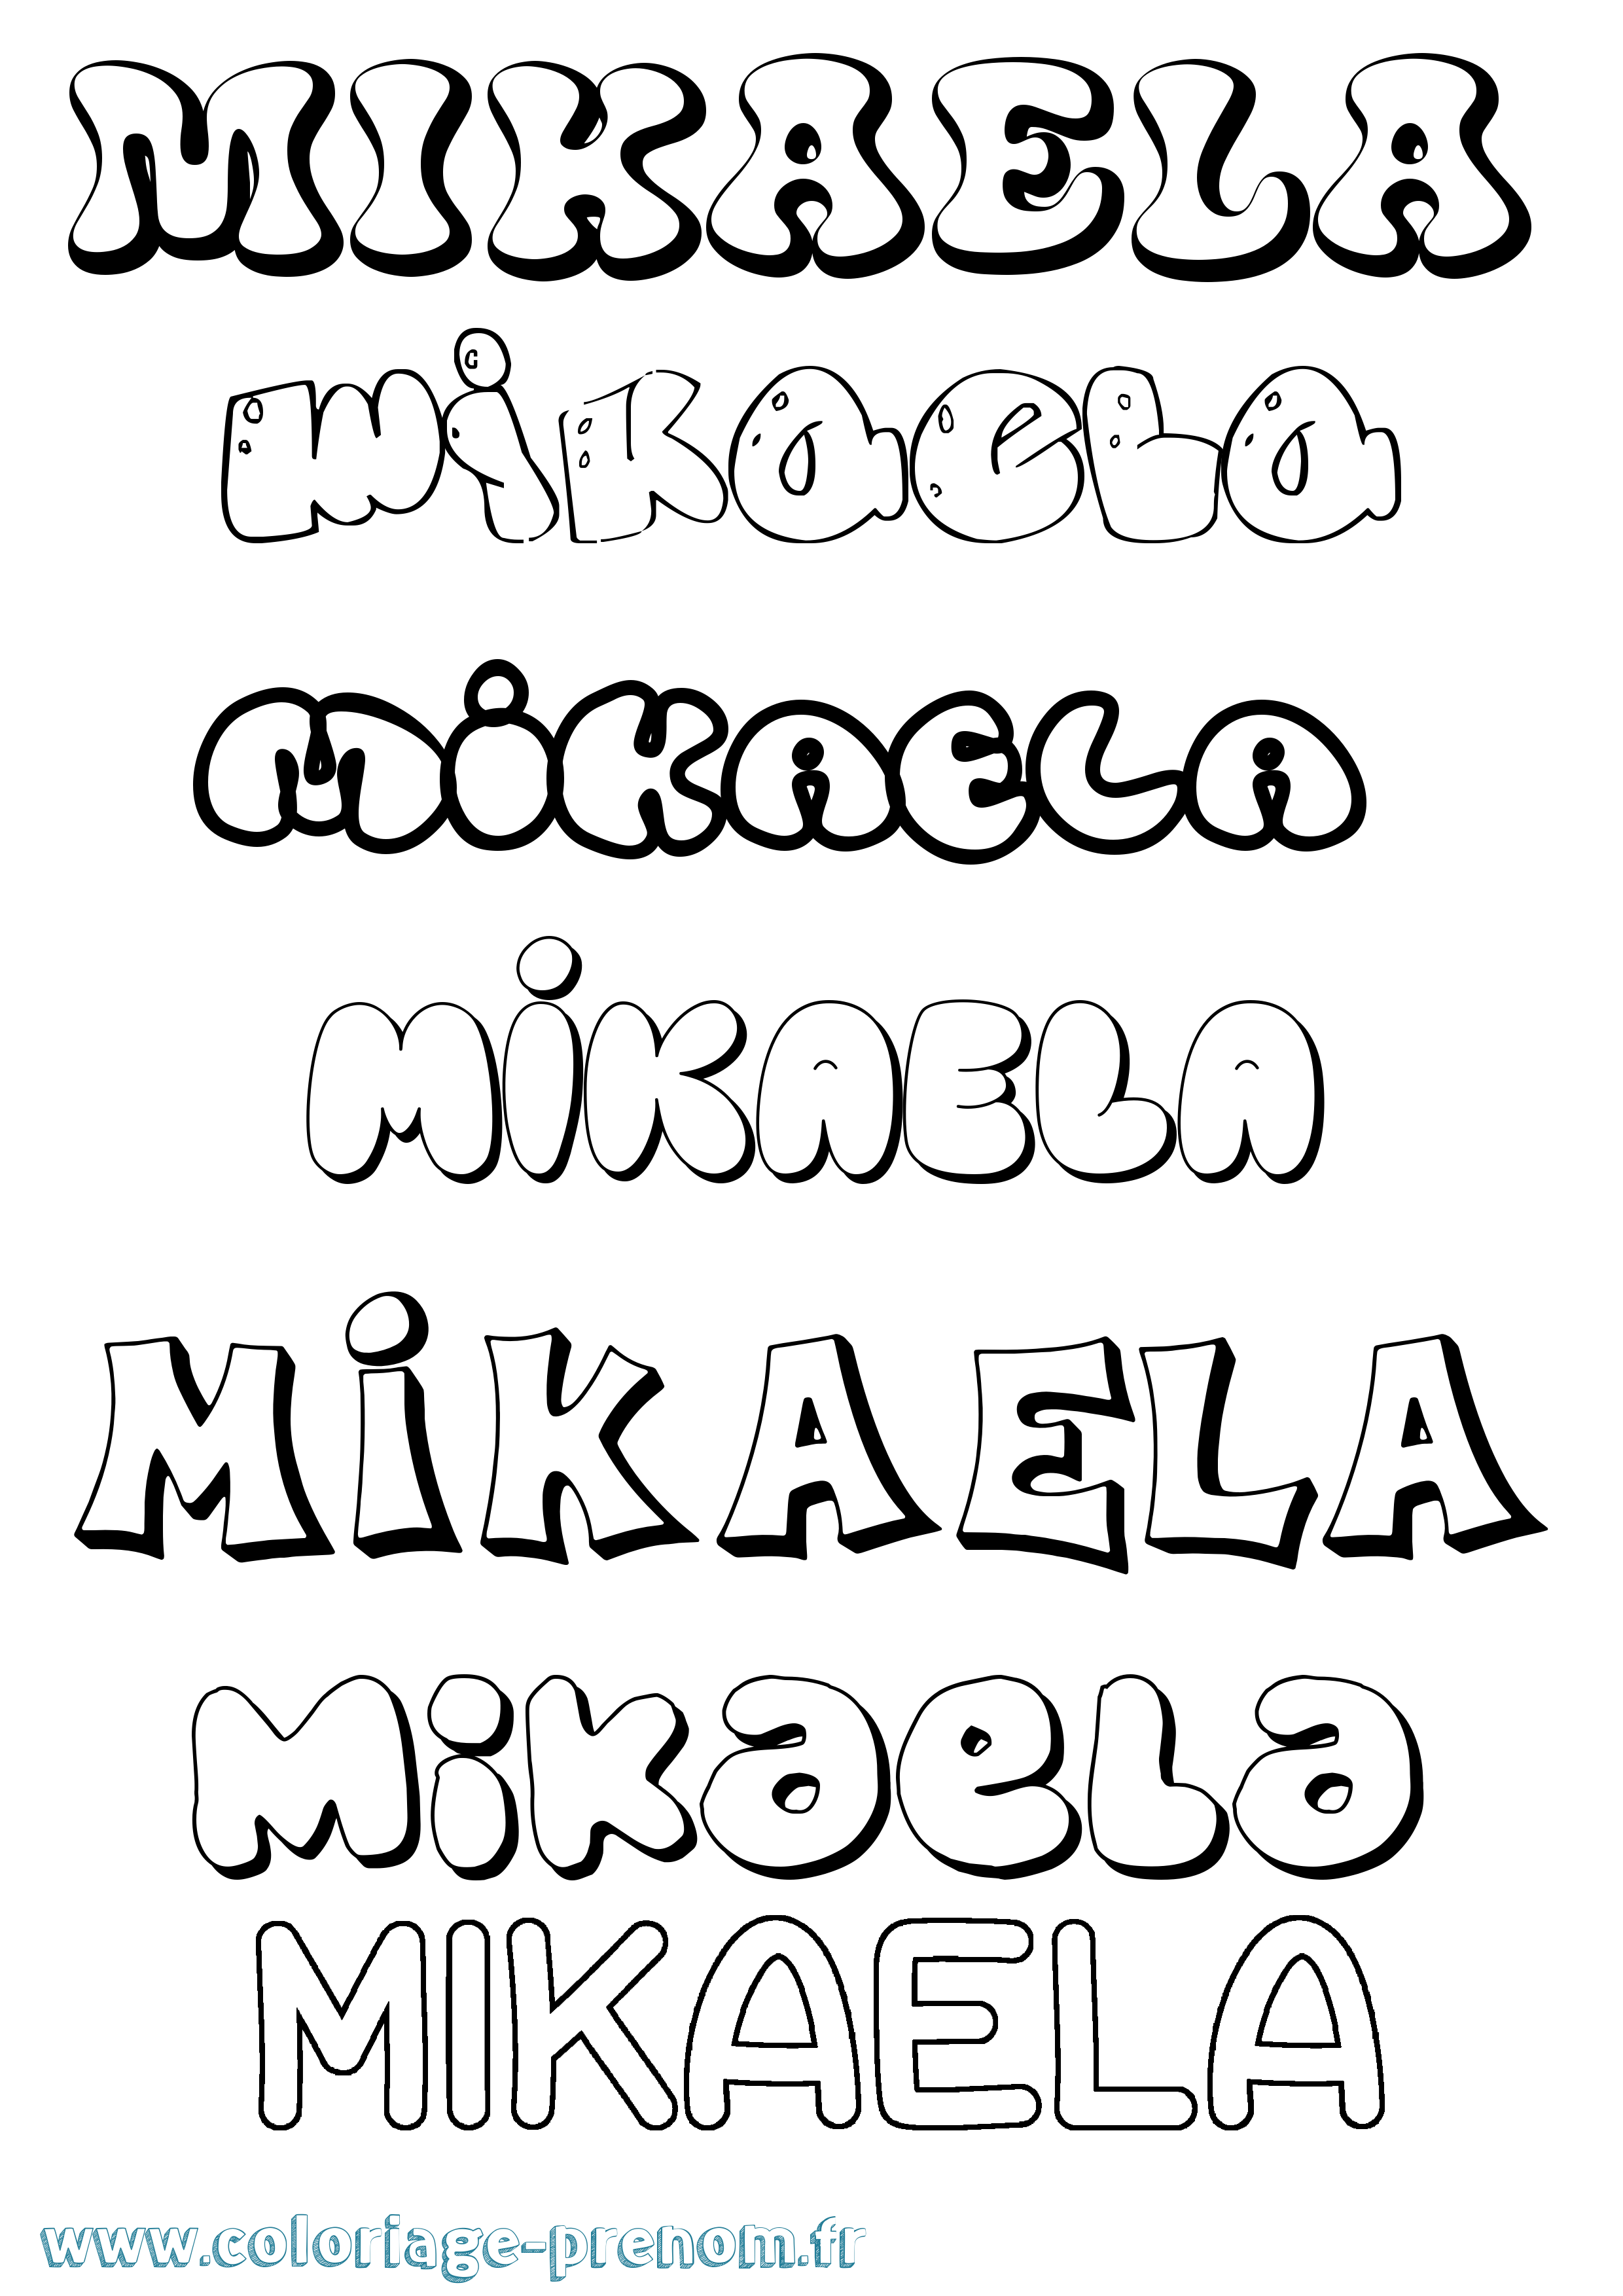 Coloriage prénom Mikaela Bubble